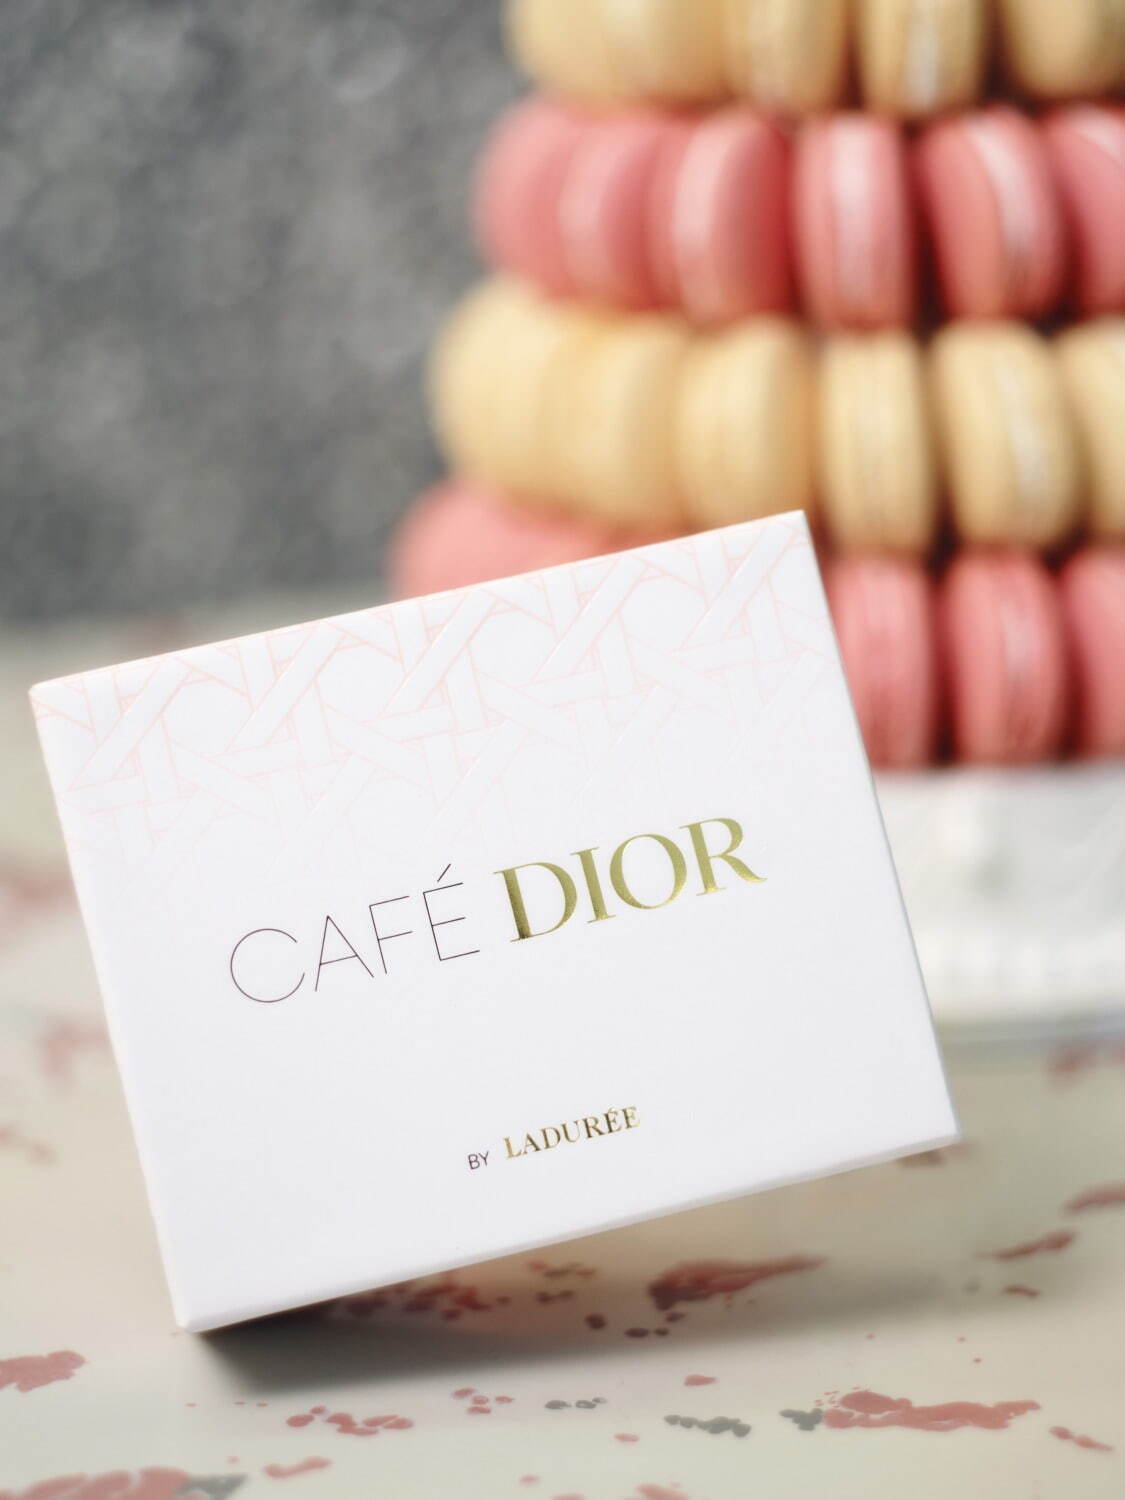 Café Dior by Ladurée